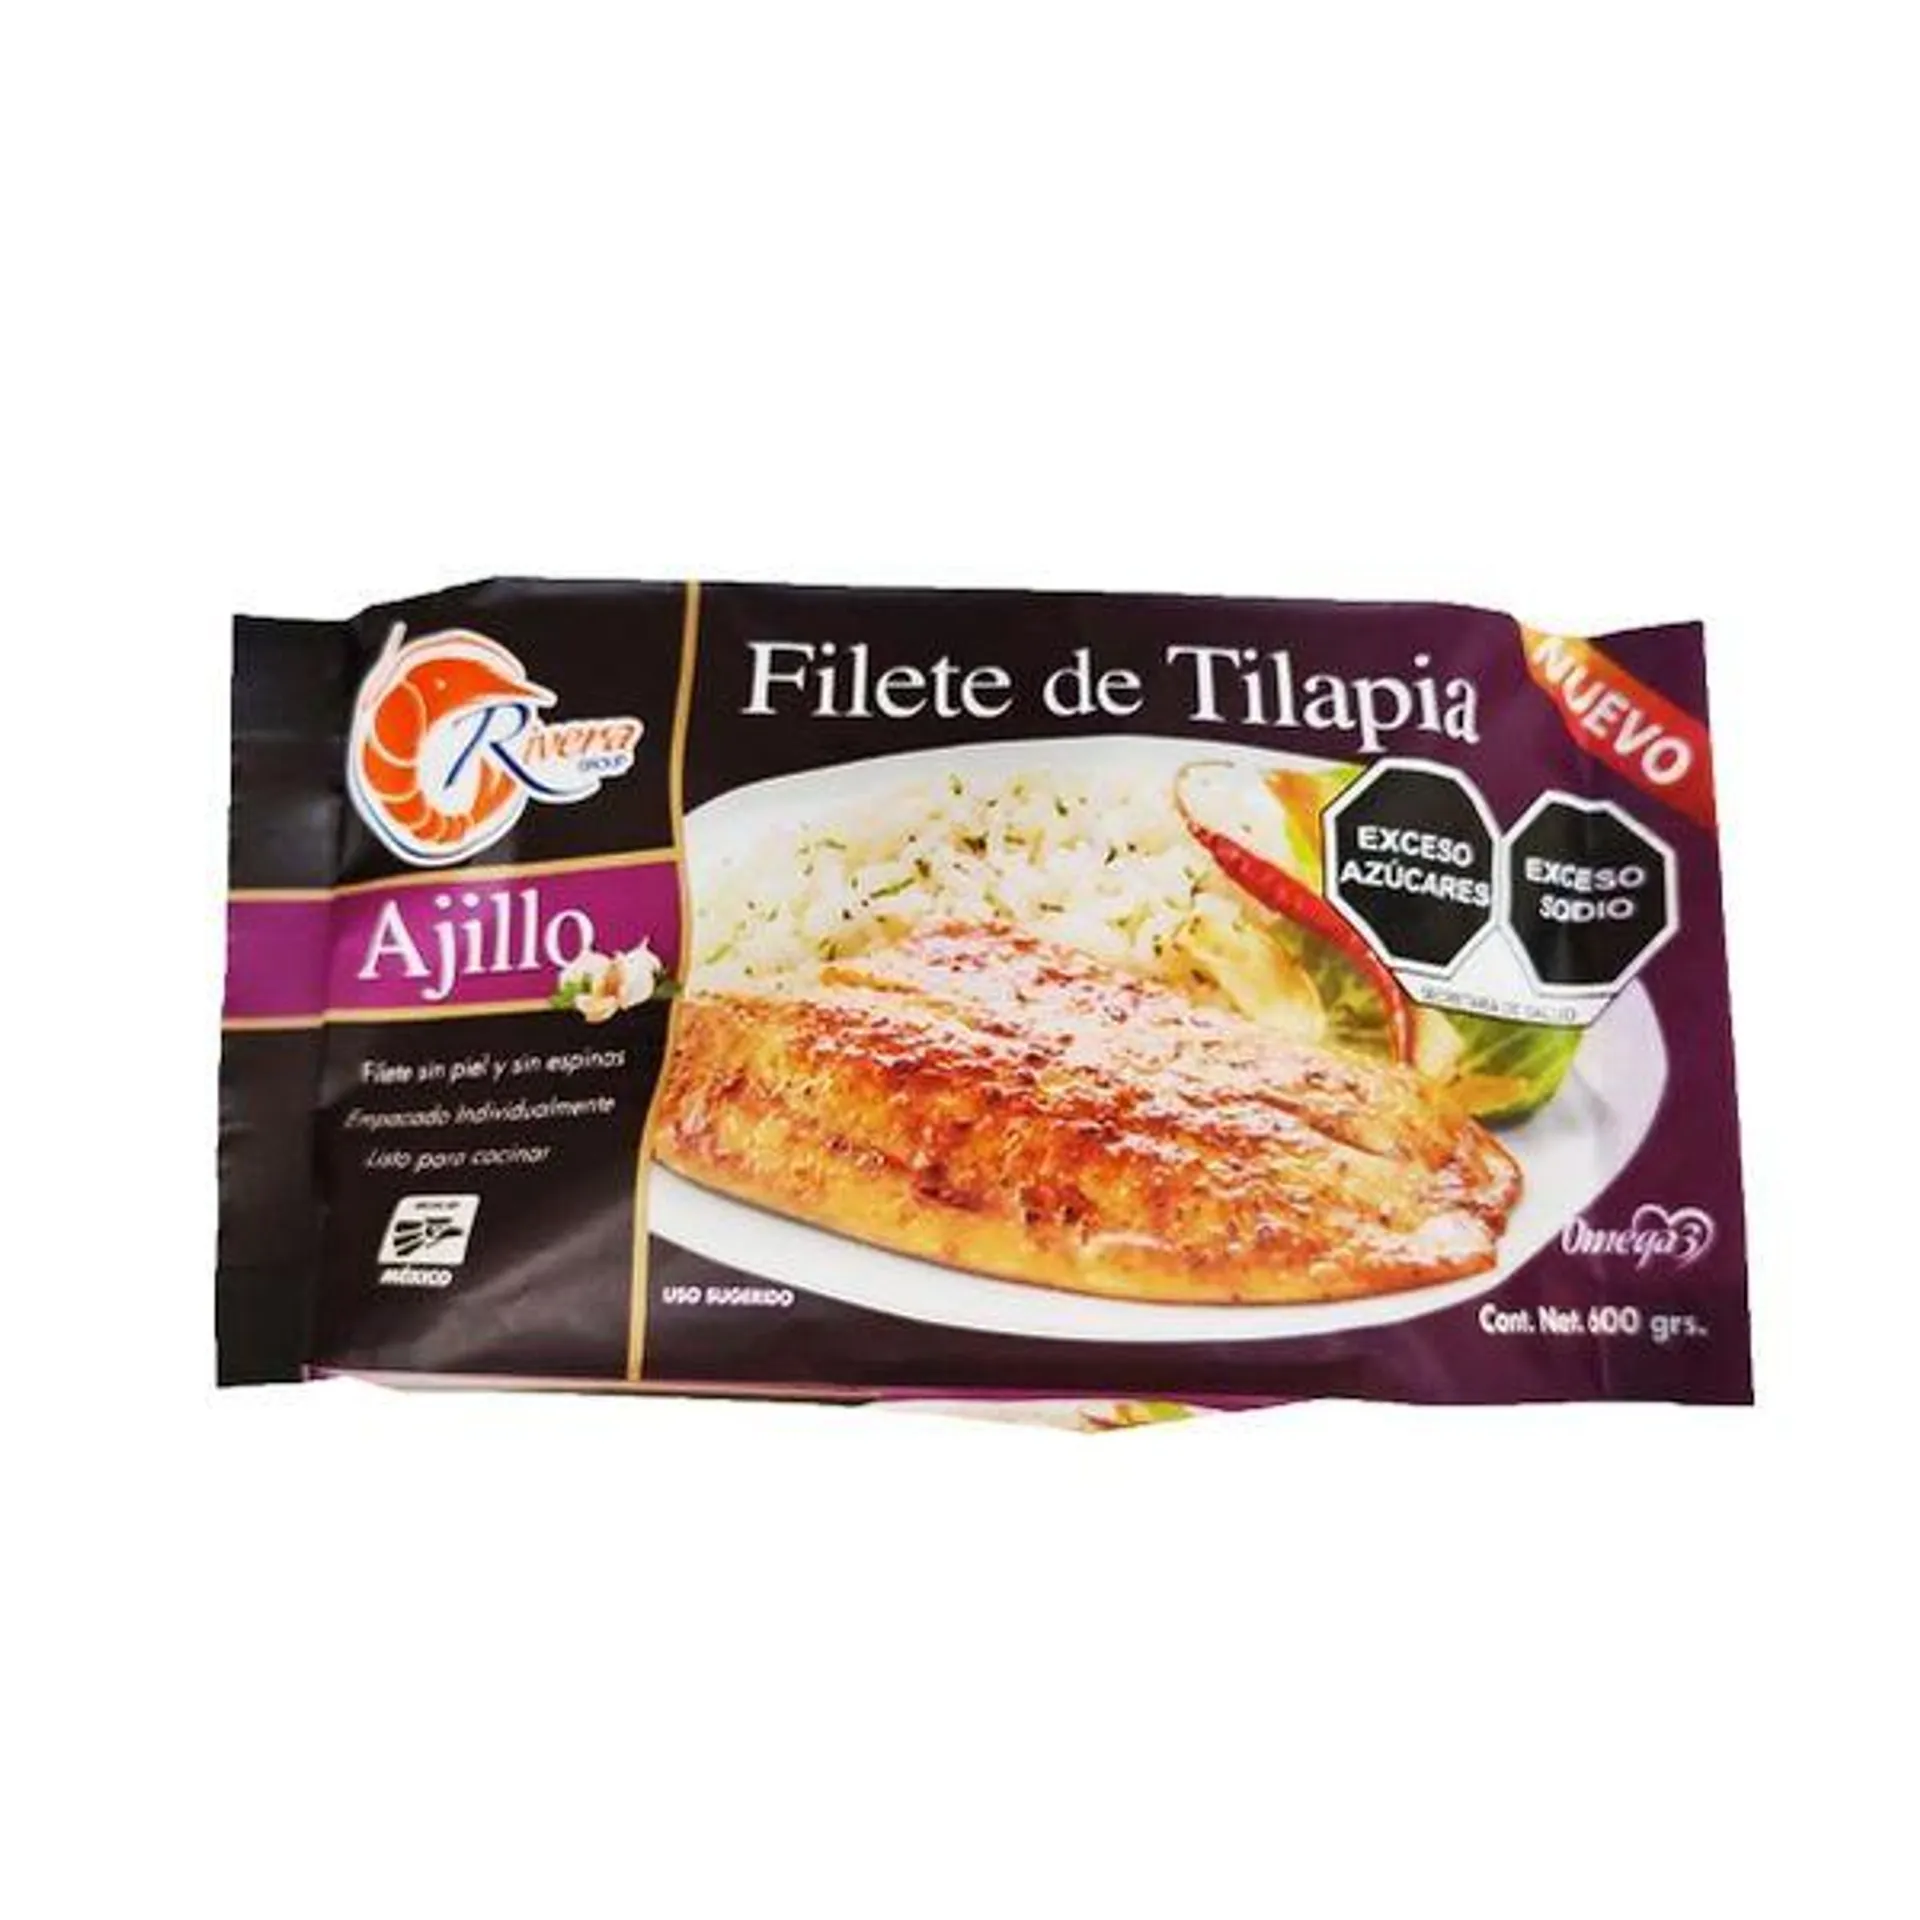 Filete Tilapia ajillo Rivera Group 600 g